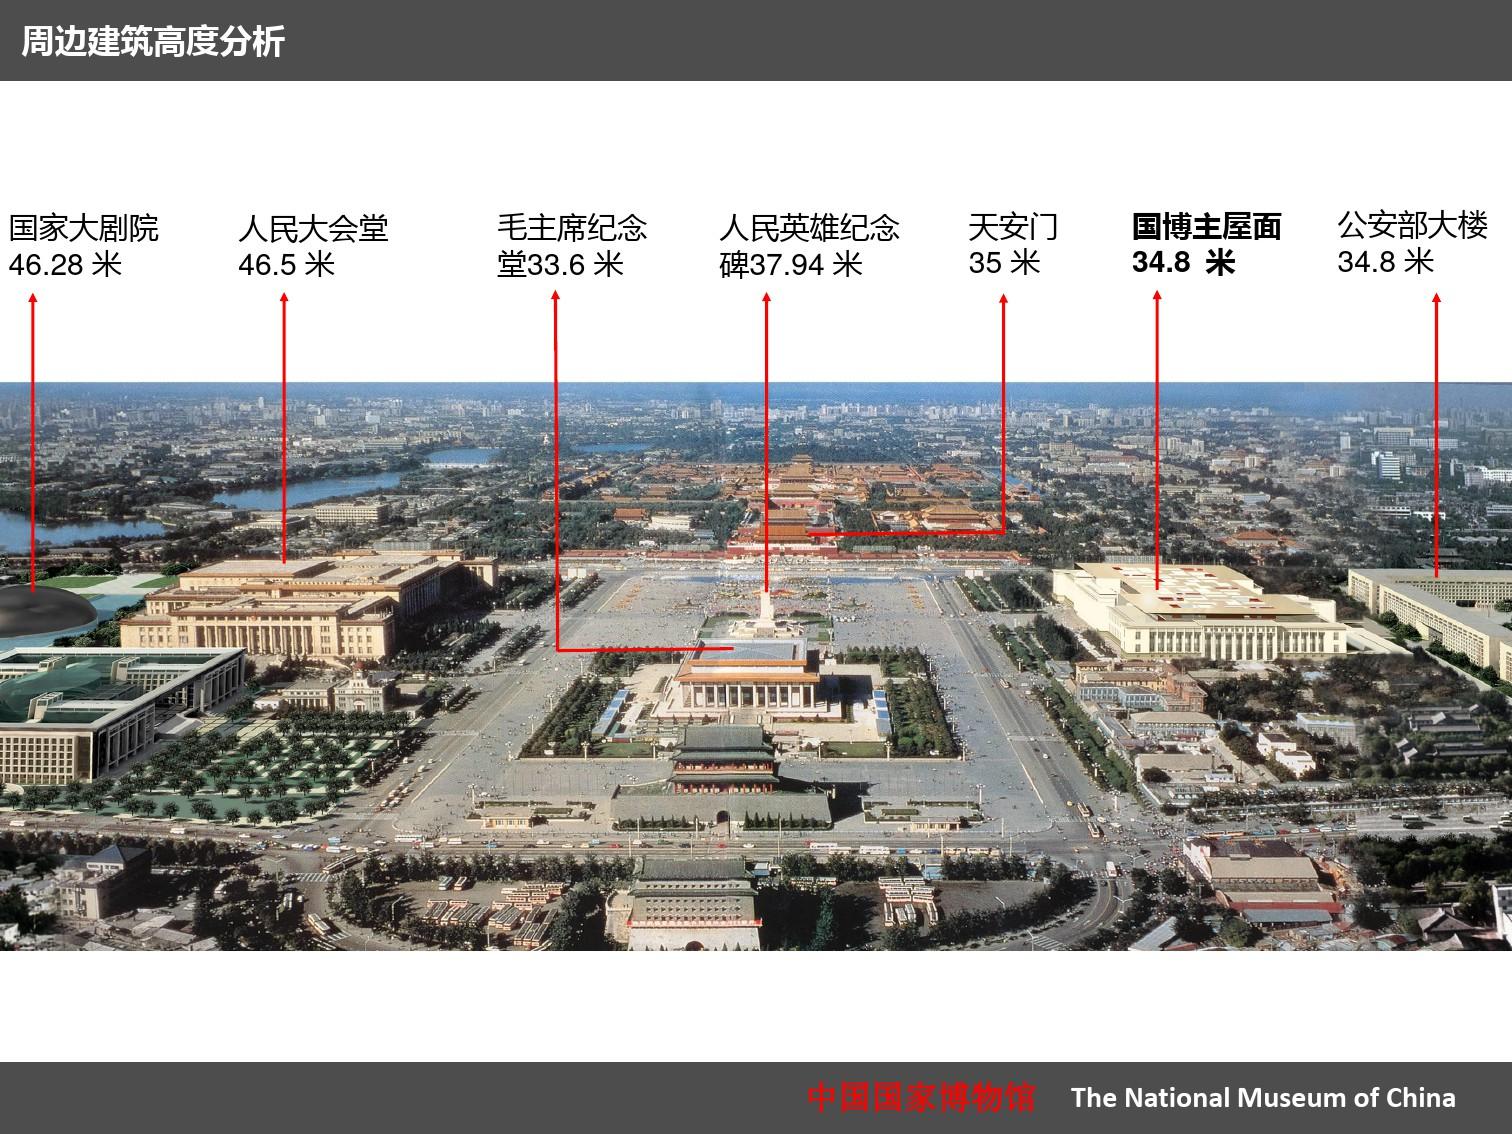 中国国家博物馆改扩建工程概况建研院